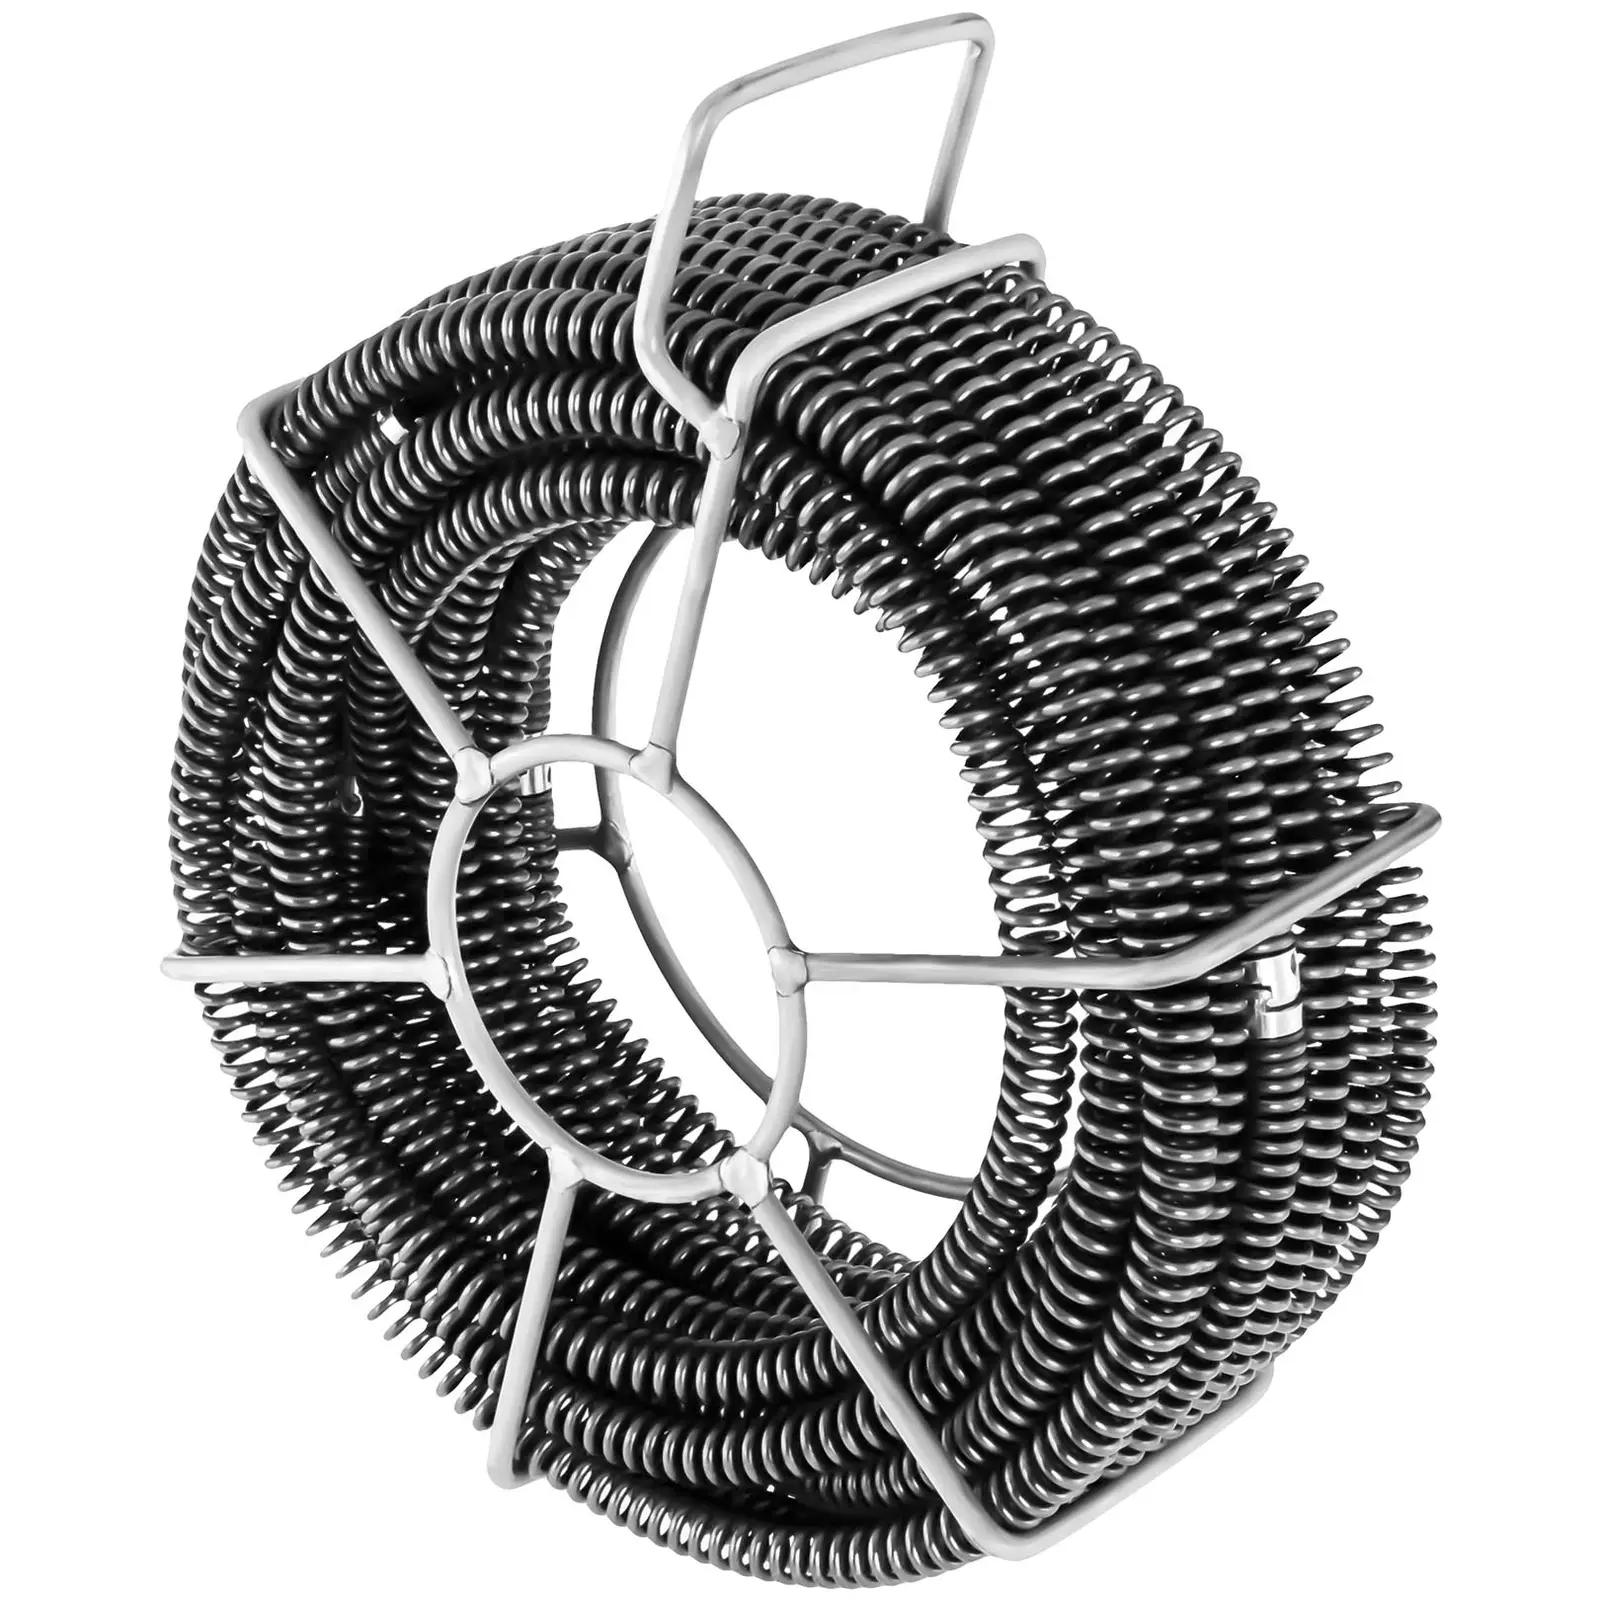 Cablu tip șarpe pentru Desfundat Țevi - Set de 6 x 2,45 m - Ø 16 mm